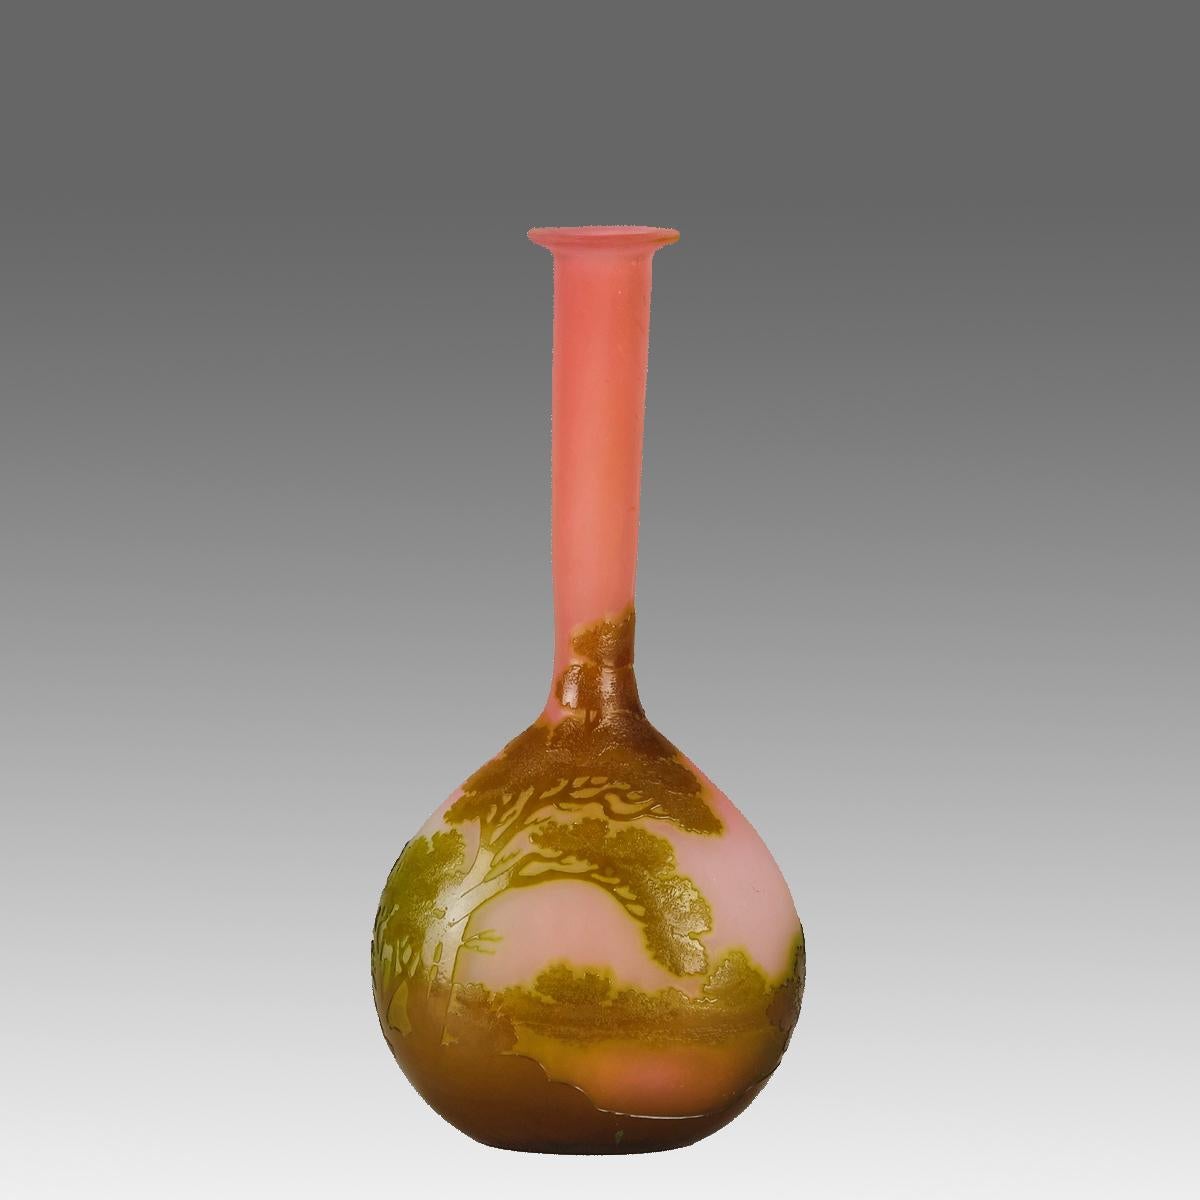 Un fabuleux vase en verre camée français de la fin du 19e siècle, décoré d'un paysage de couleur citron vert sur un fond rose chaud. Les détails et les couleurs sont excellents. L'œuvre est signée Galle en camée.

INFORMATIONS